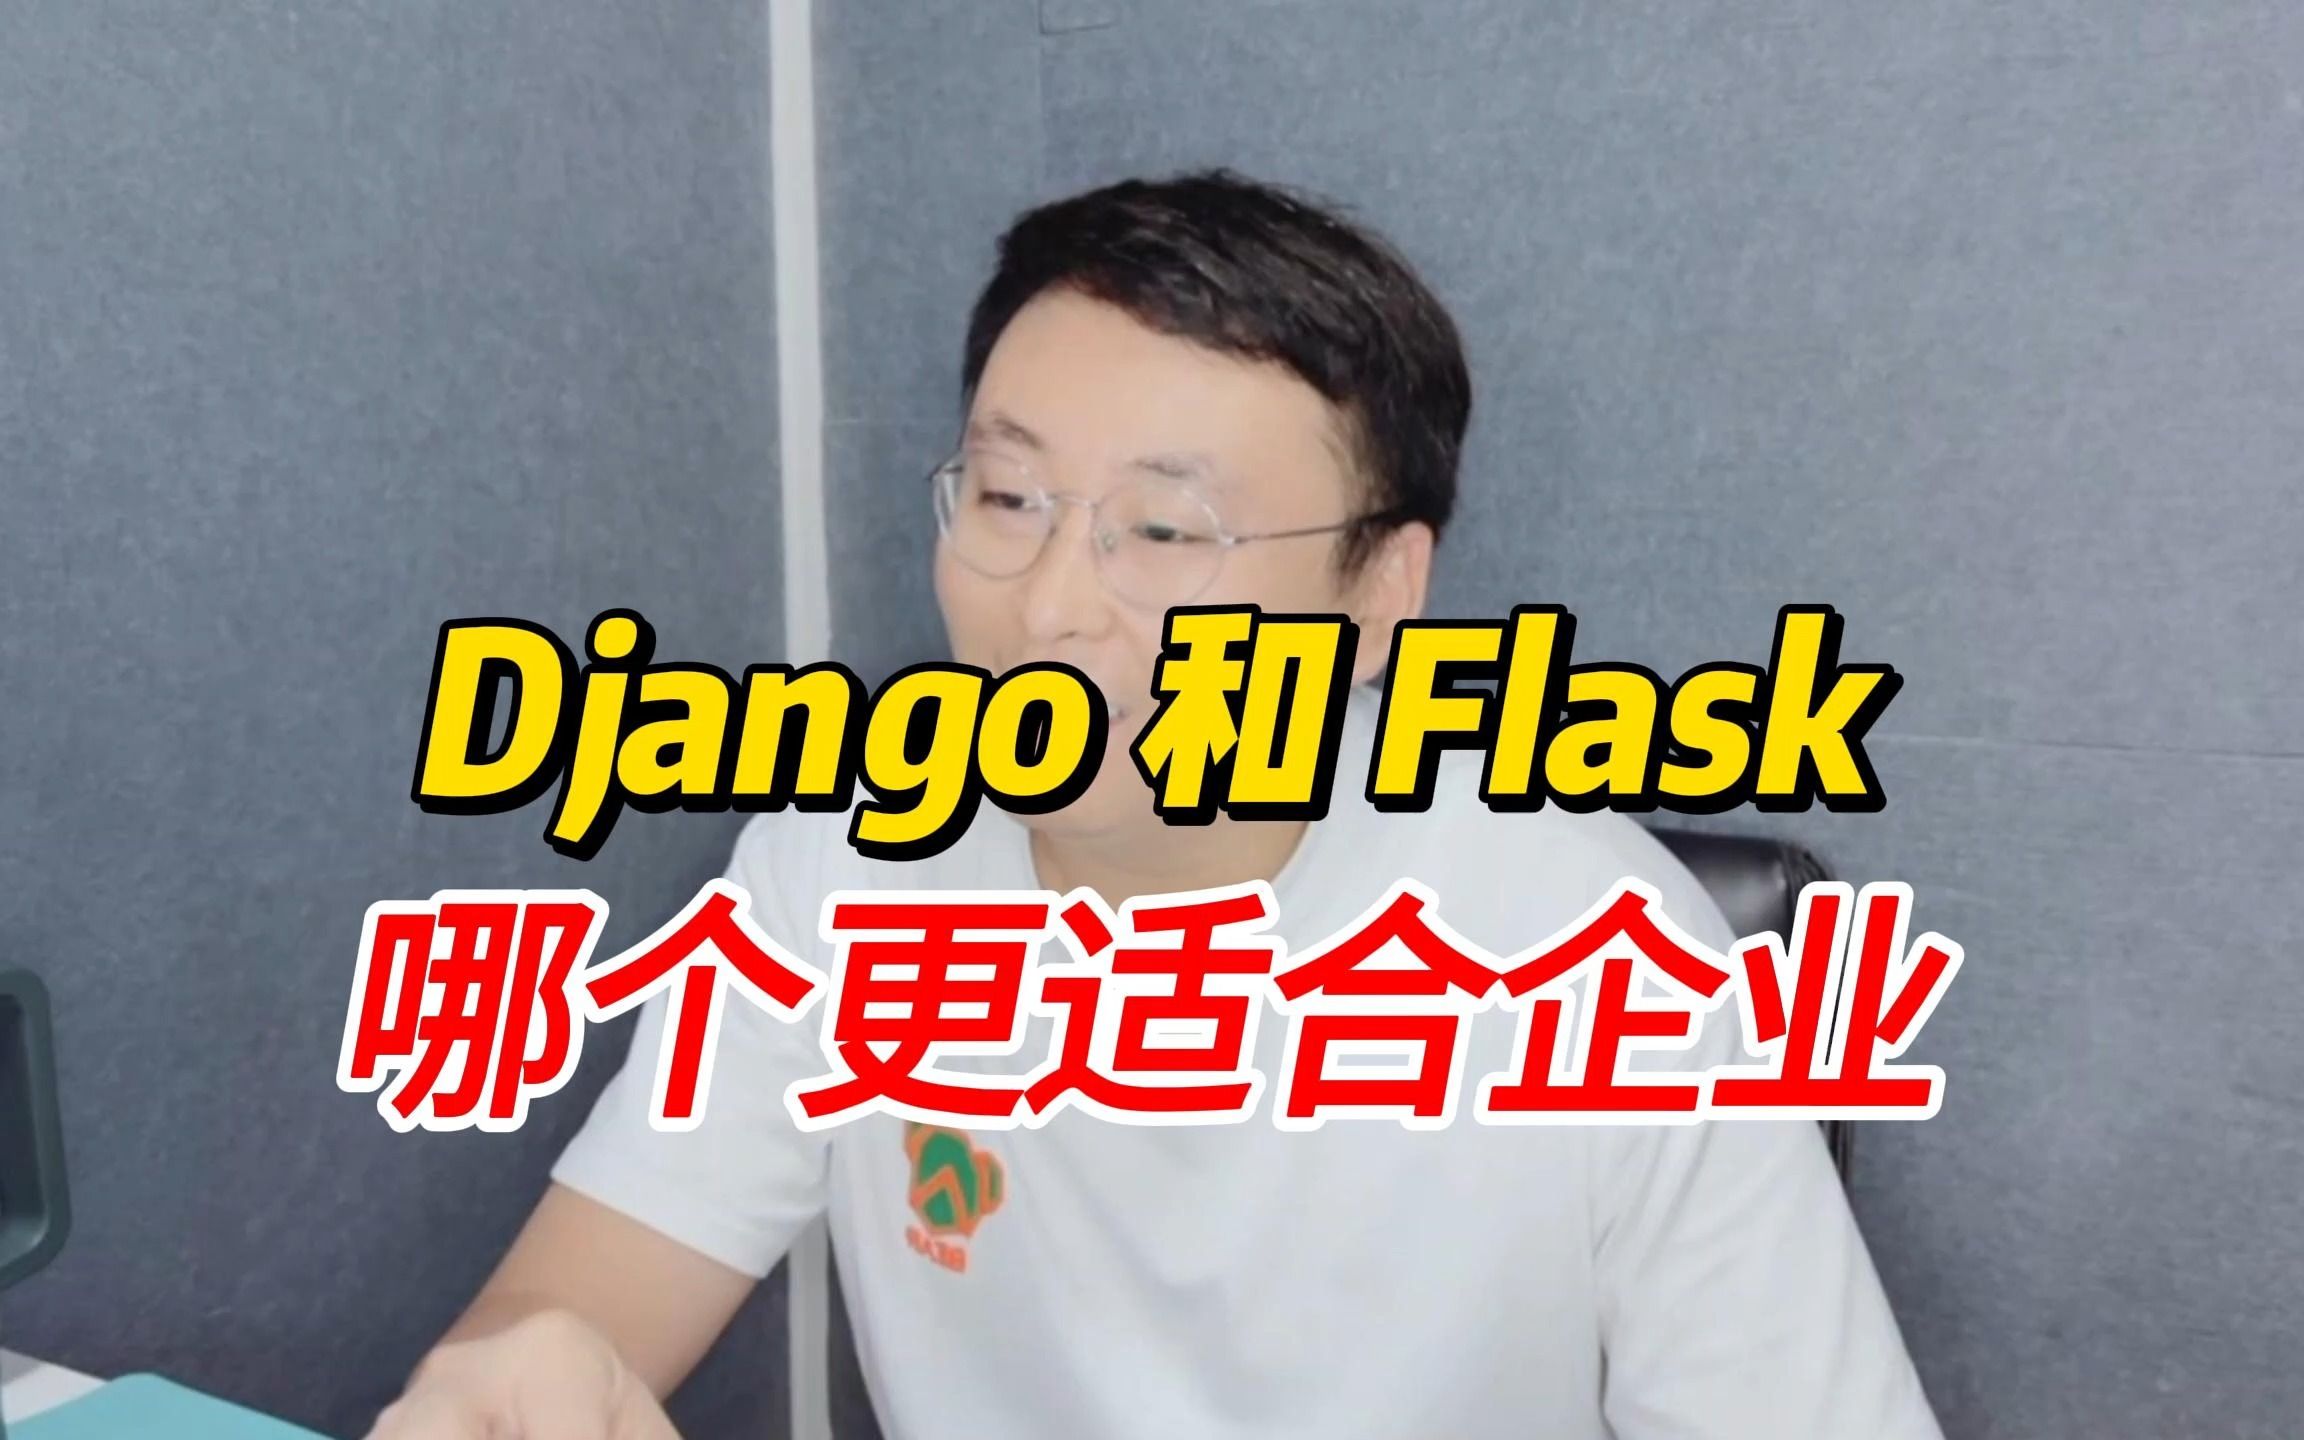 Django和Flask，哪个更适合企业？